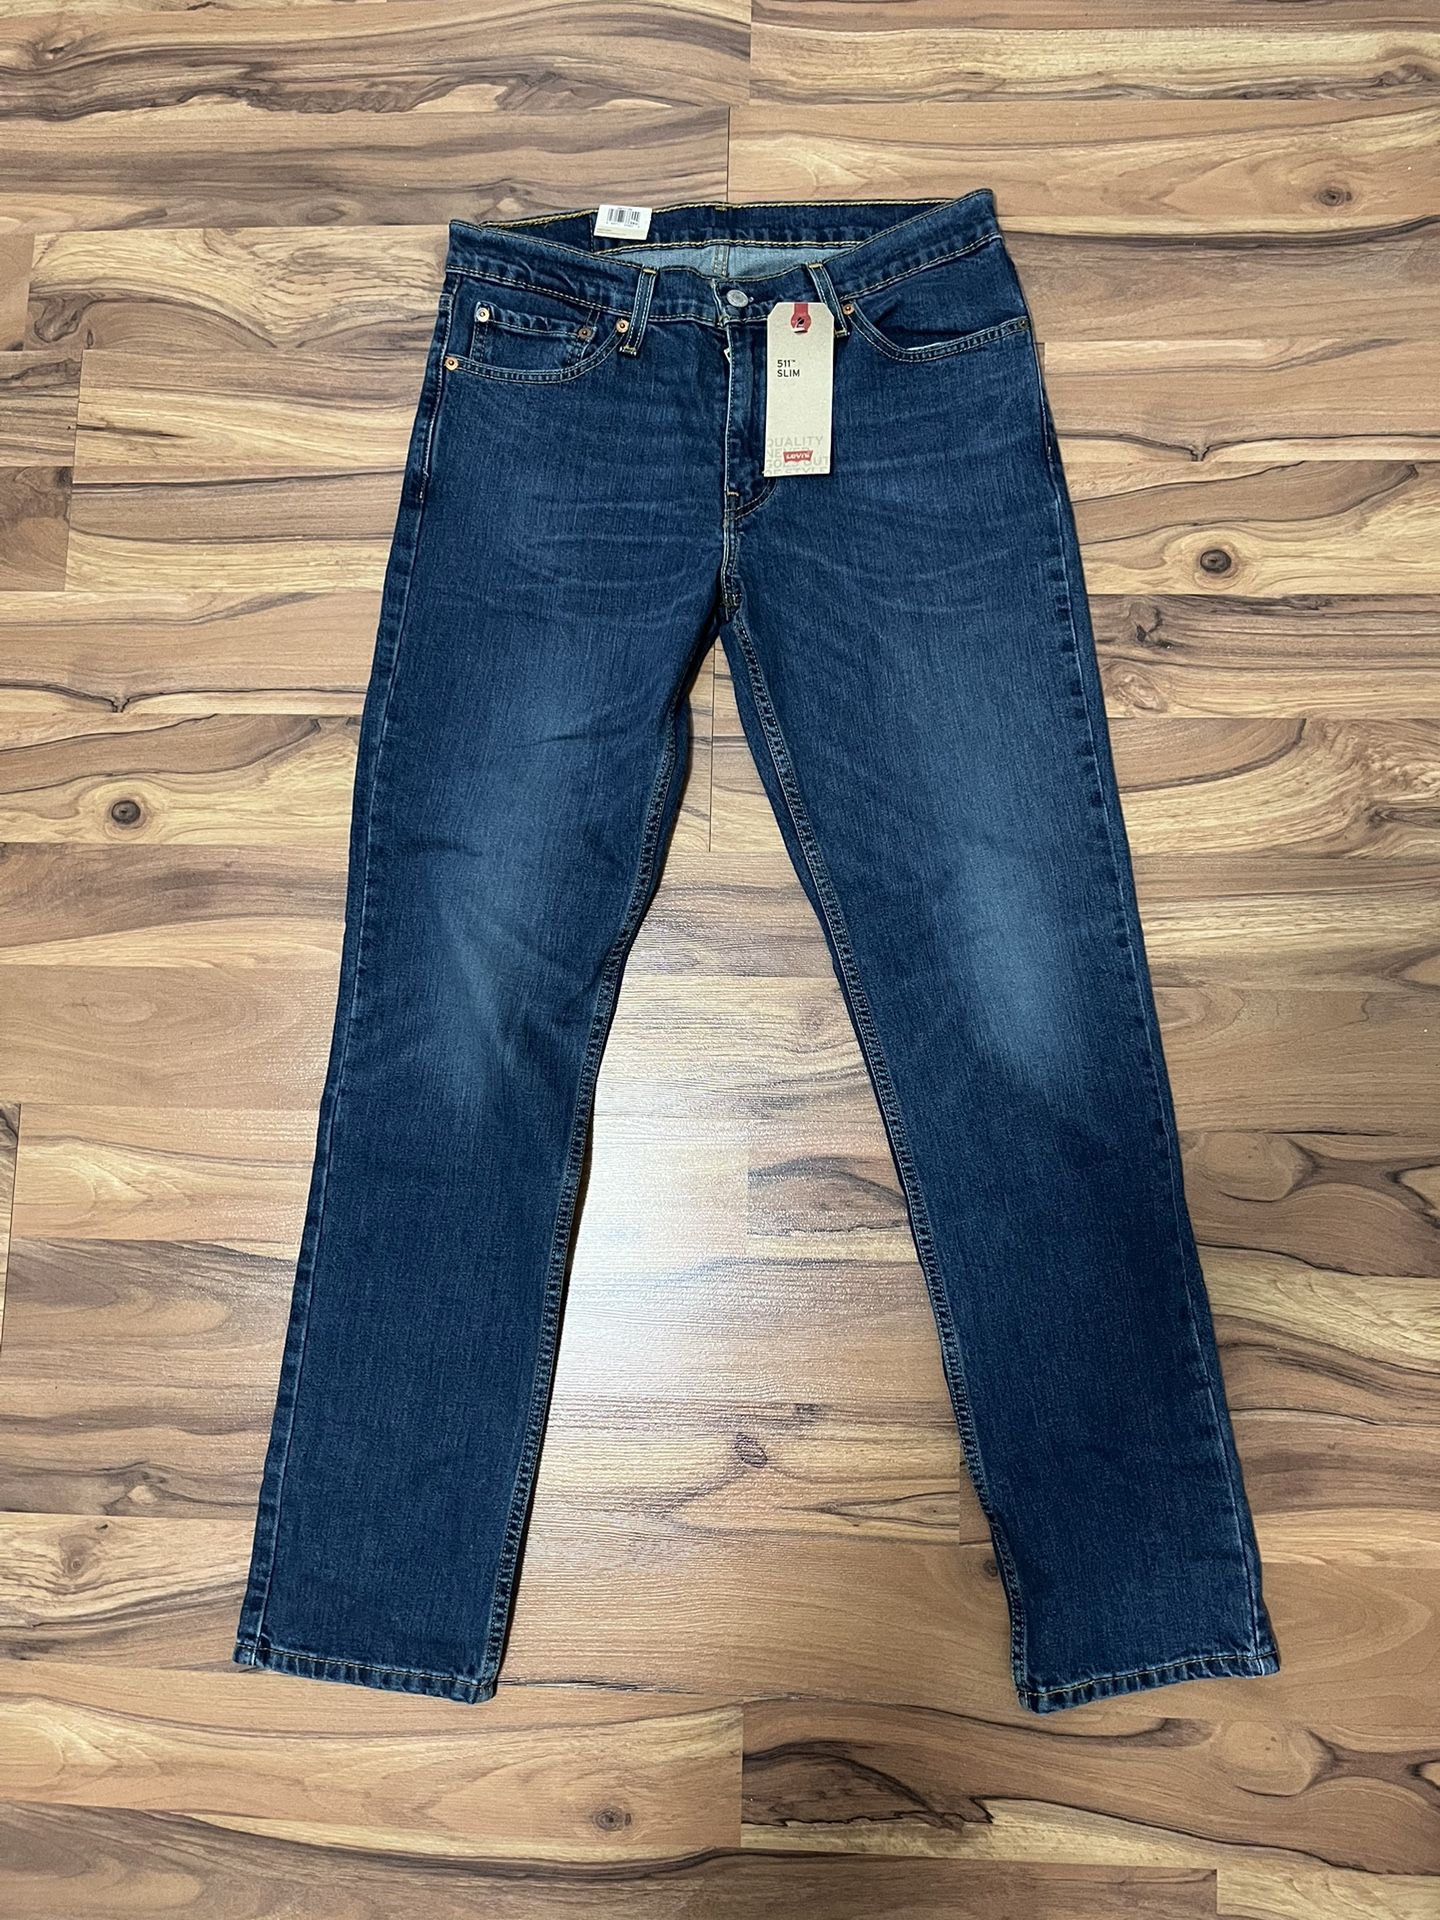 Levi’s 511 Slim Stretch Jeans 32 X 32 New